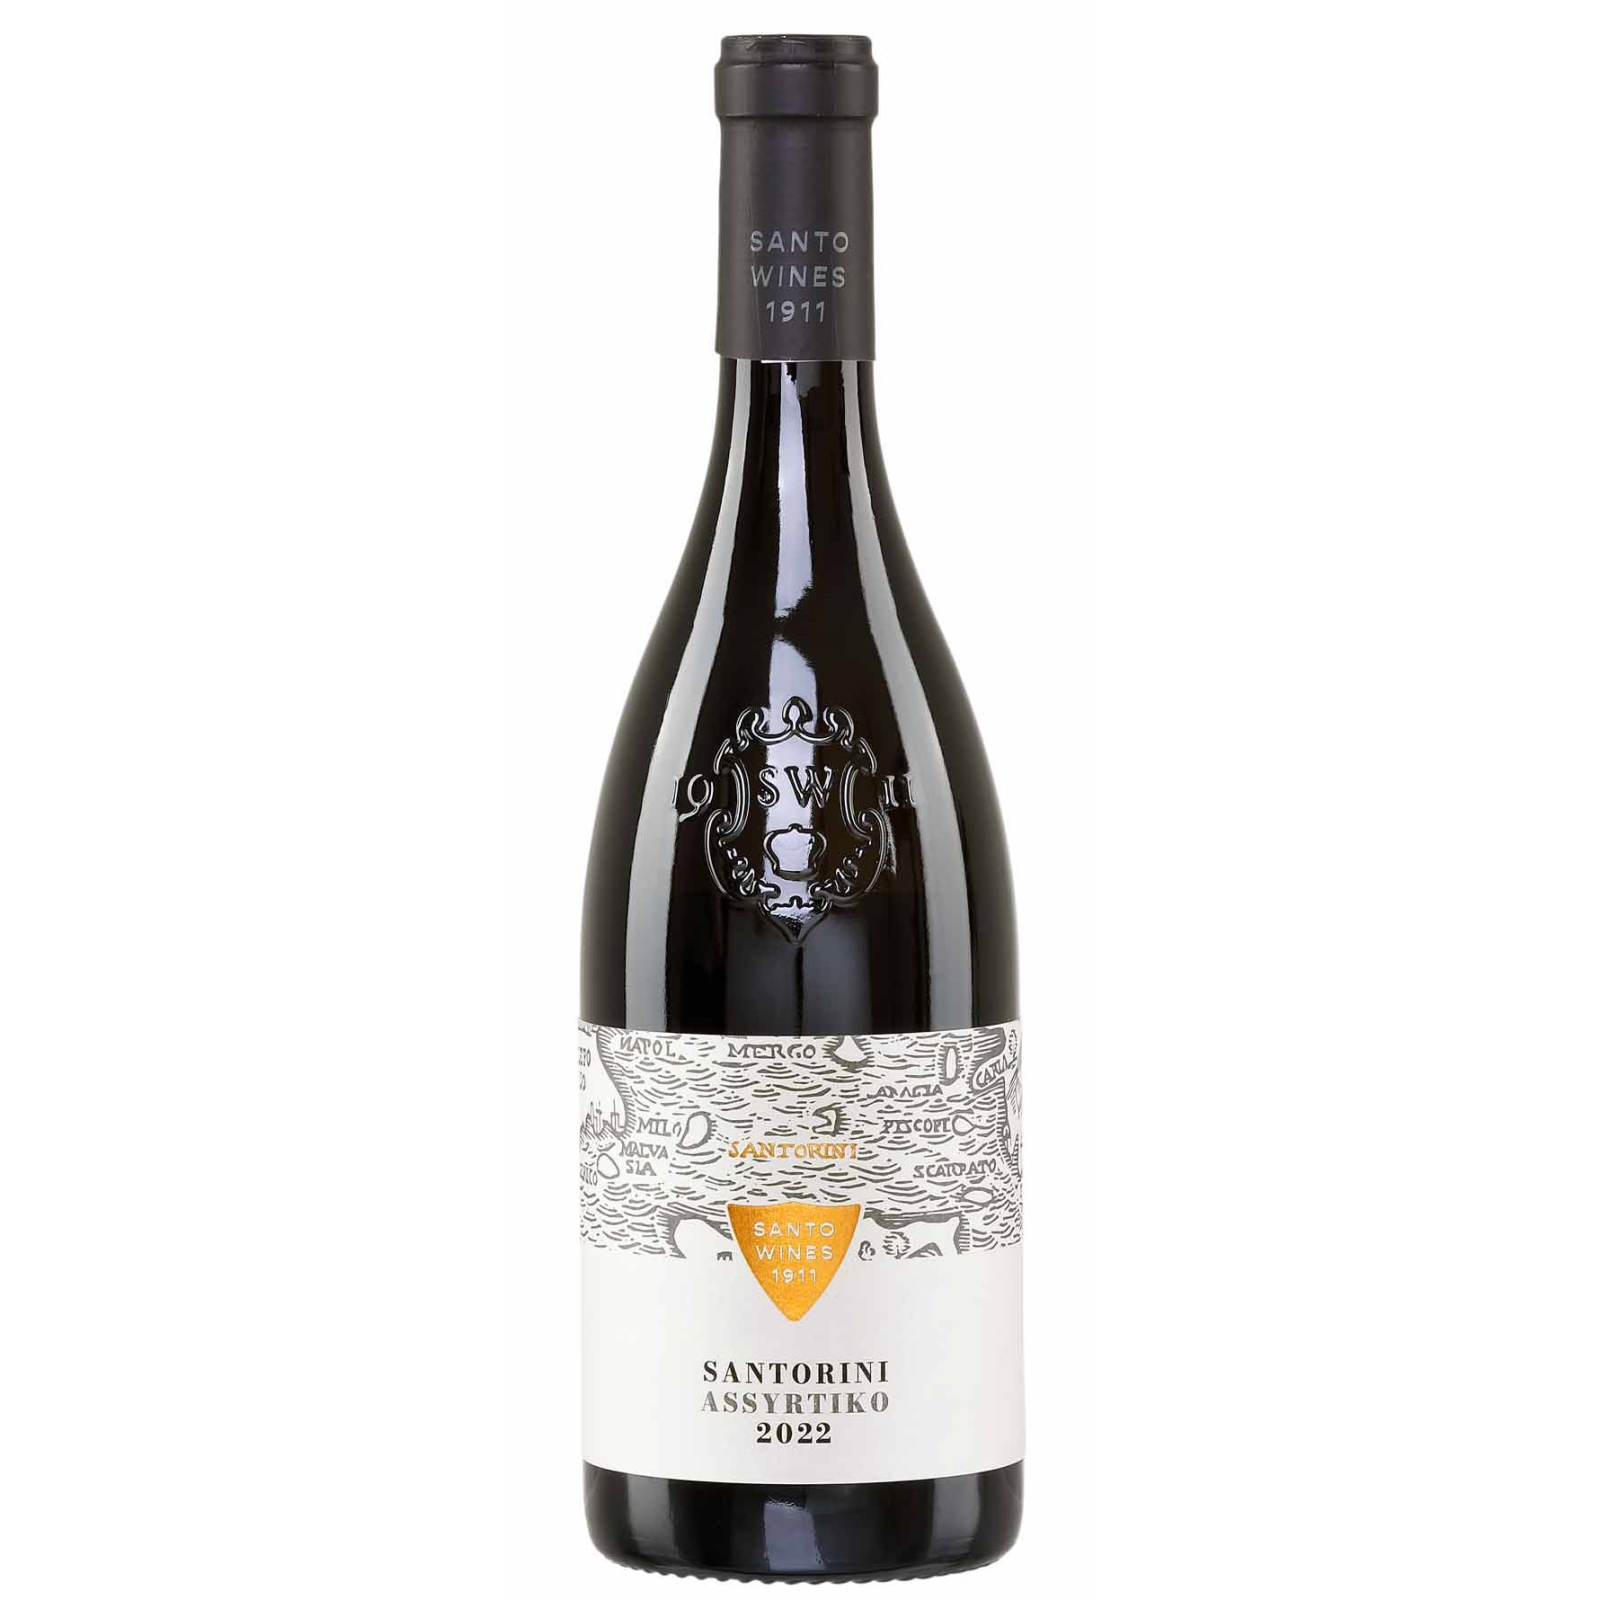 Santorini Assyrtiko Weißwein von Santo Wines kaufen, 20,99 €